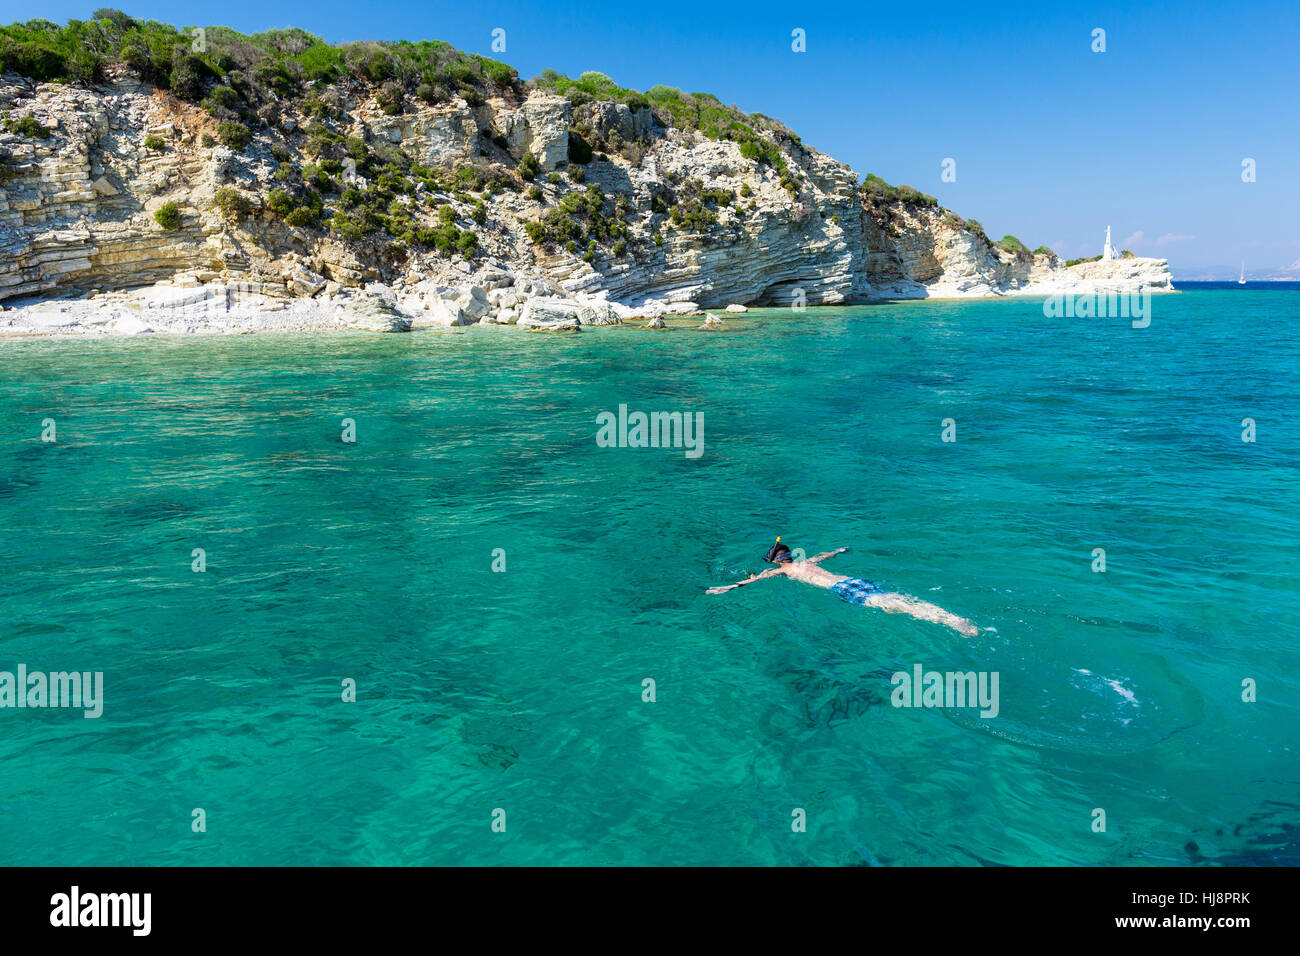 Man snorkeling in Ionian Sea, Lefkada, Greece Stock Photo